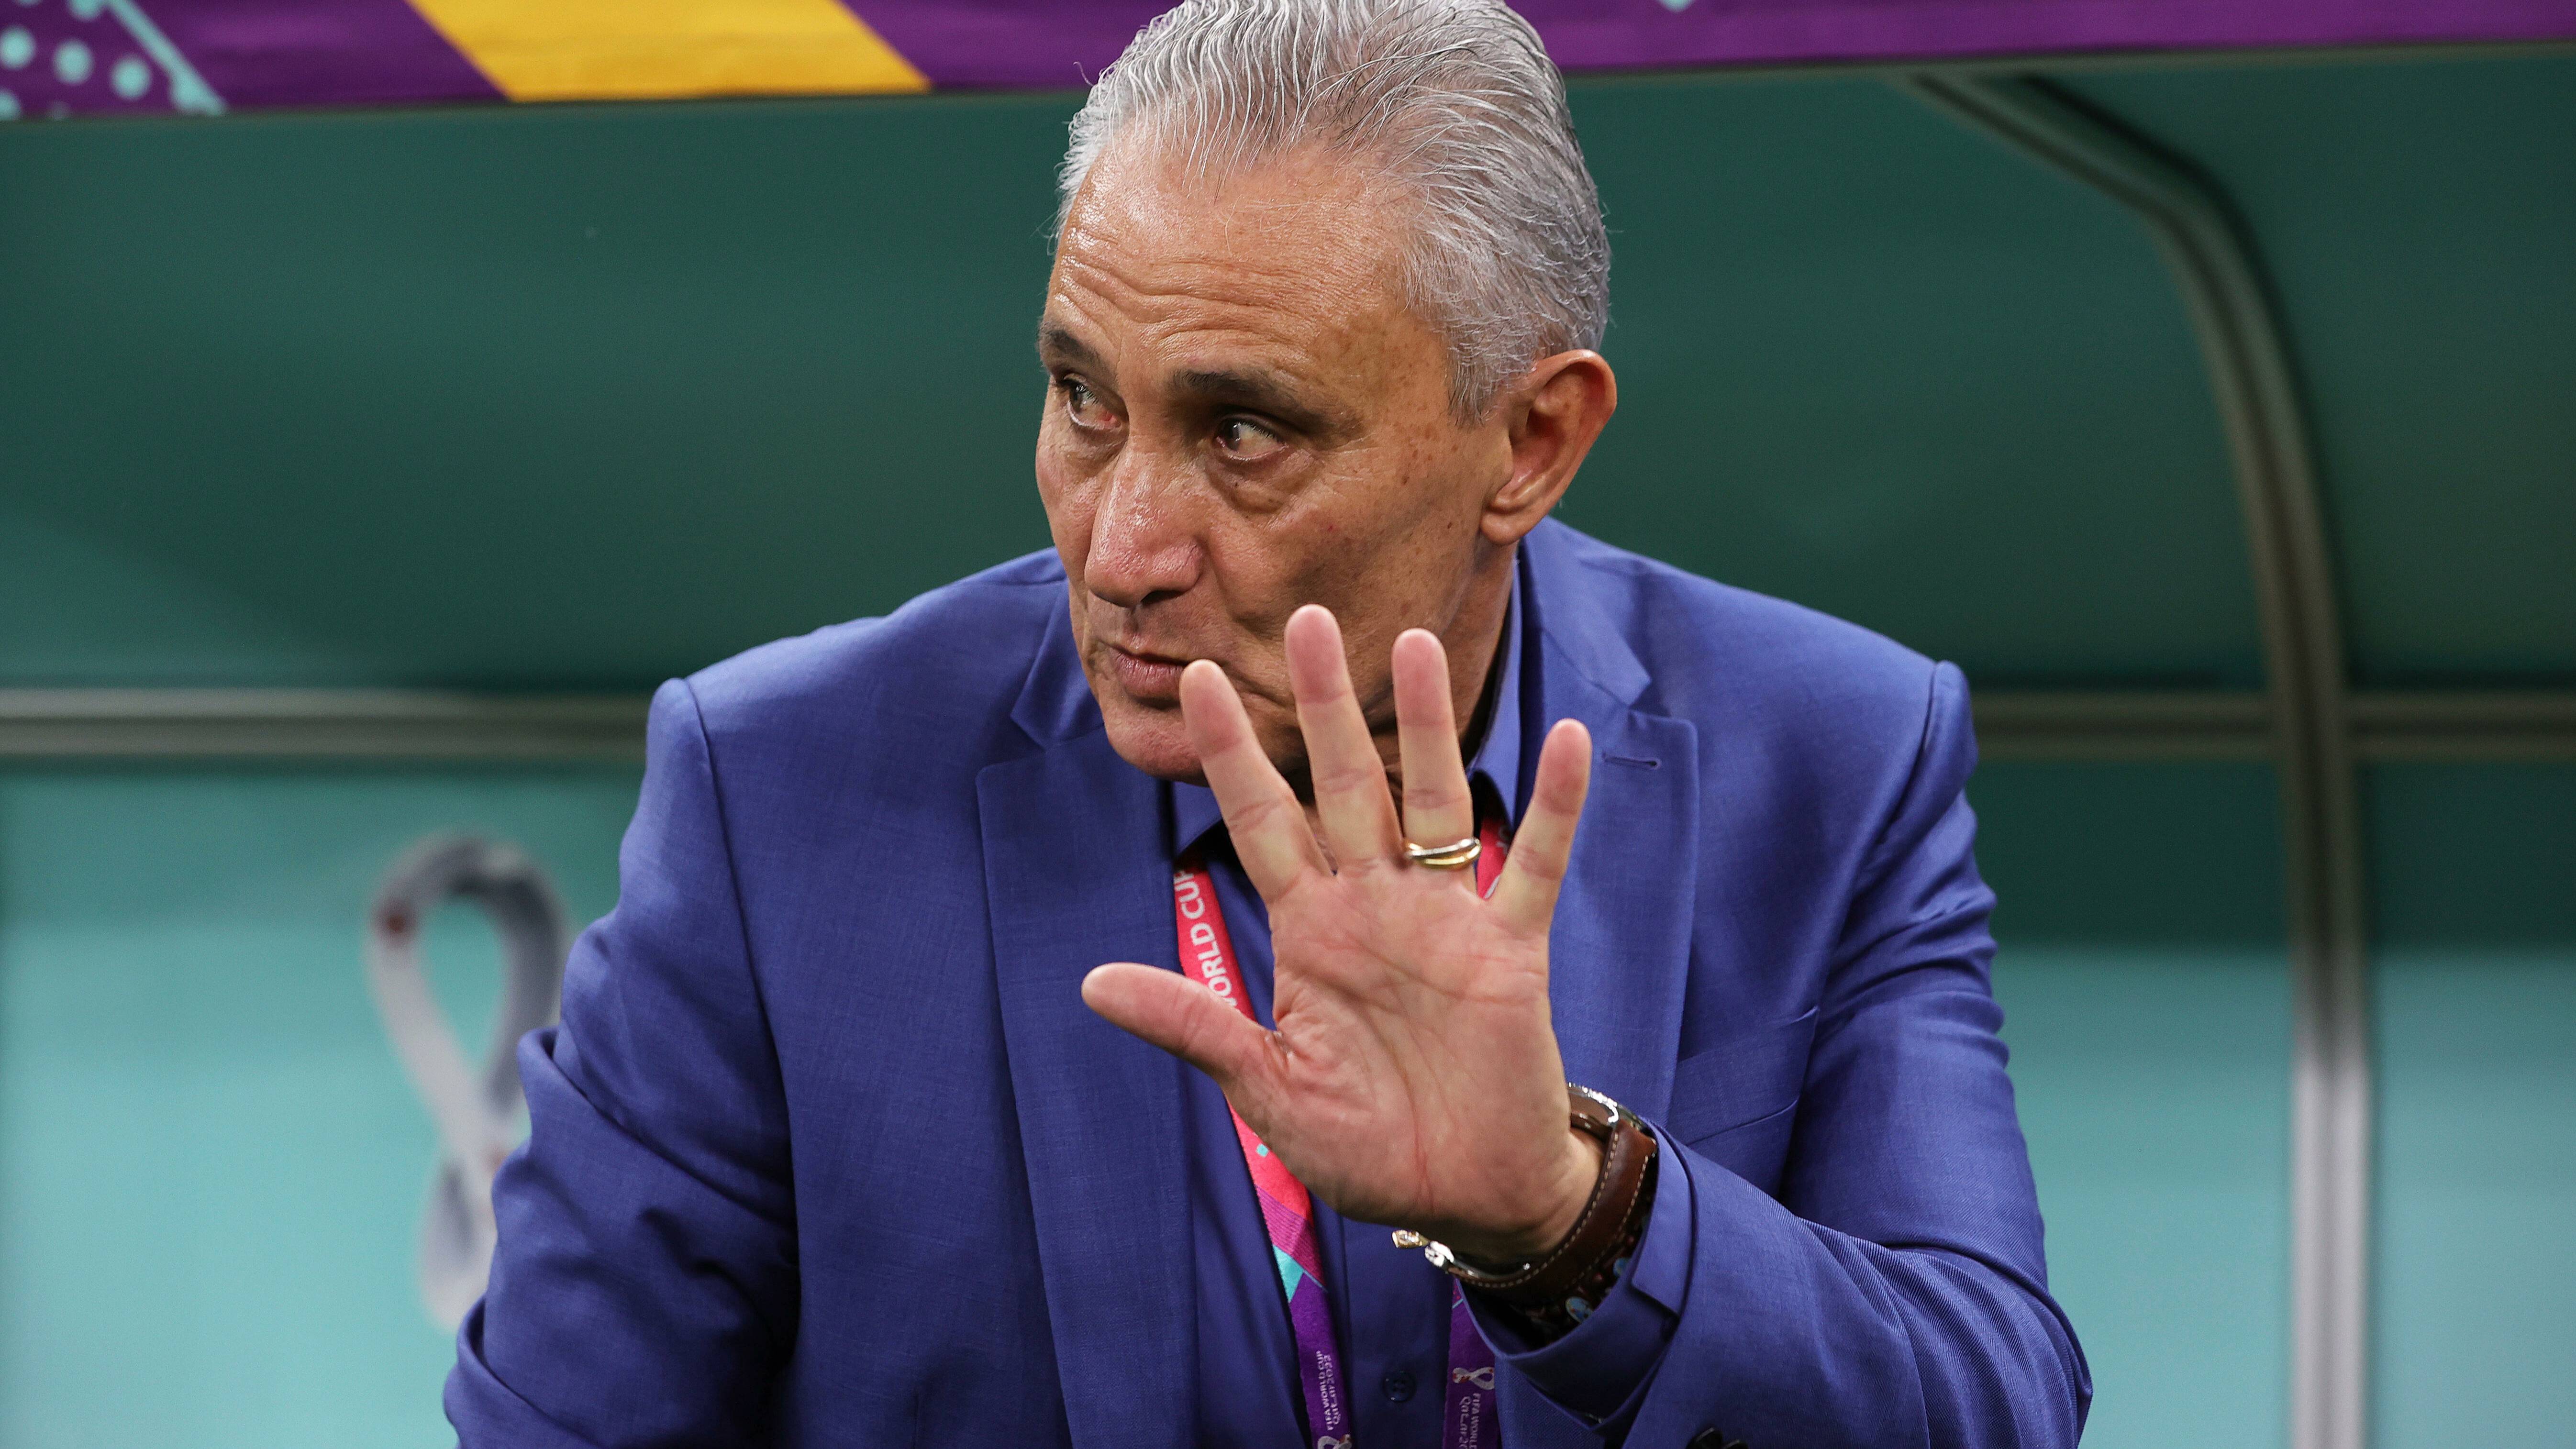 "Конец цикла": Тренер сборной Бразилии покинул команду после провала на ЧМ